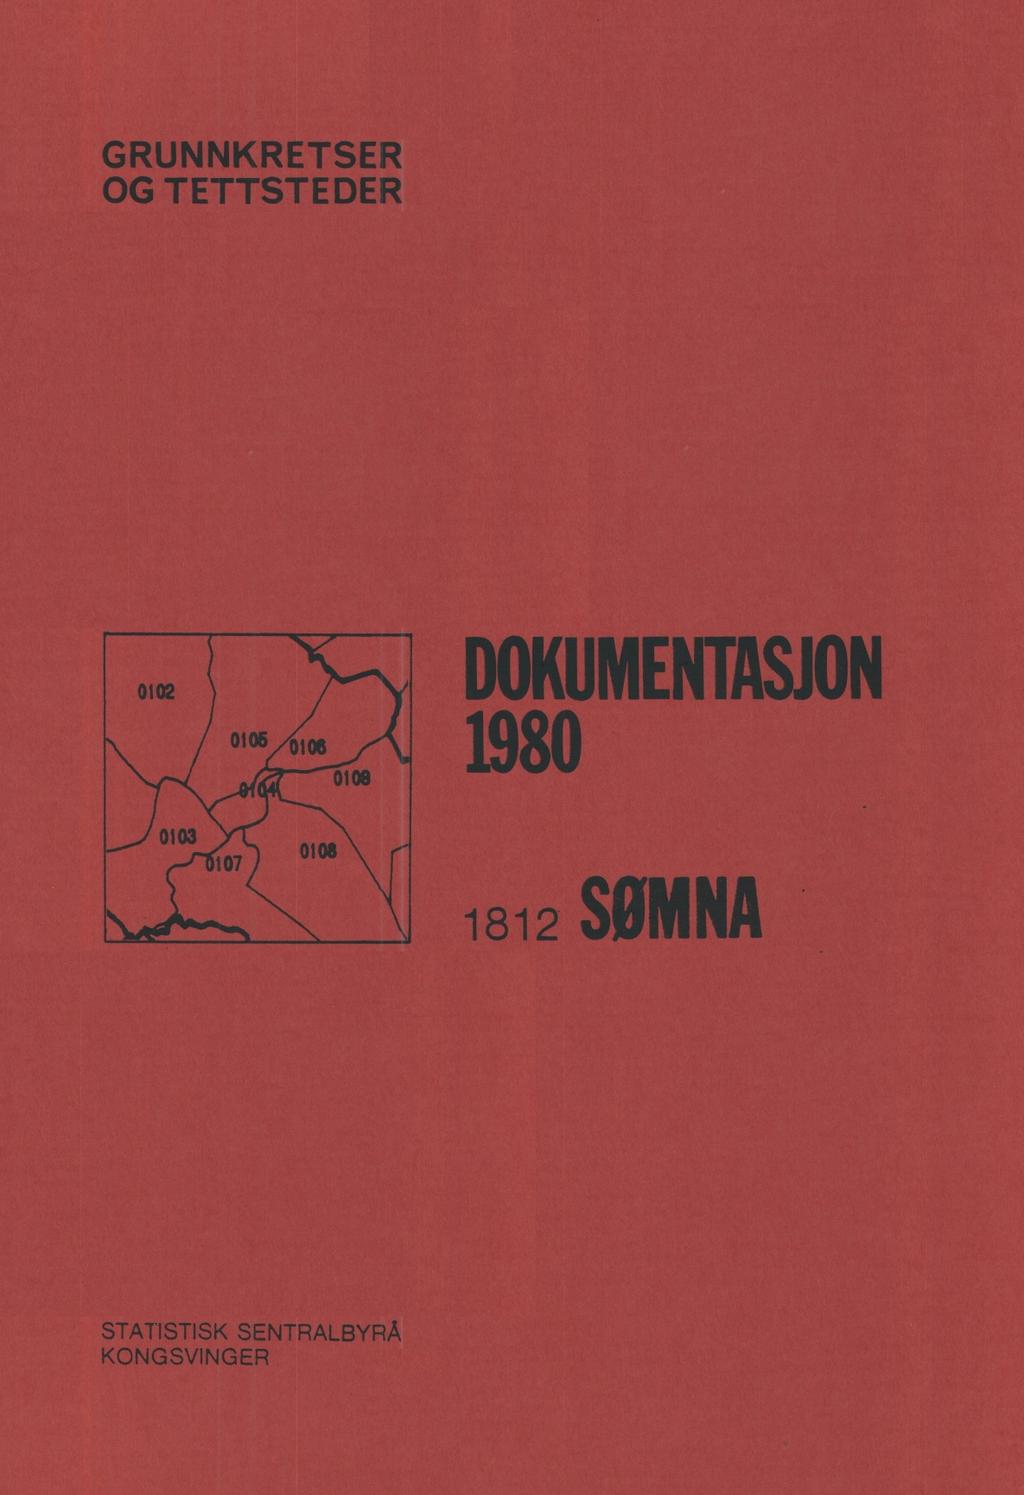 GRUNNKRETSER OG TETTSTEDER DOKUMENTASJON 1980